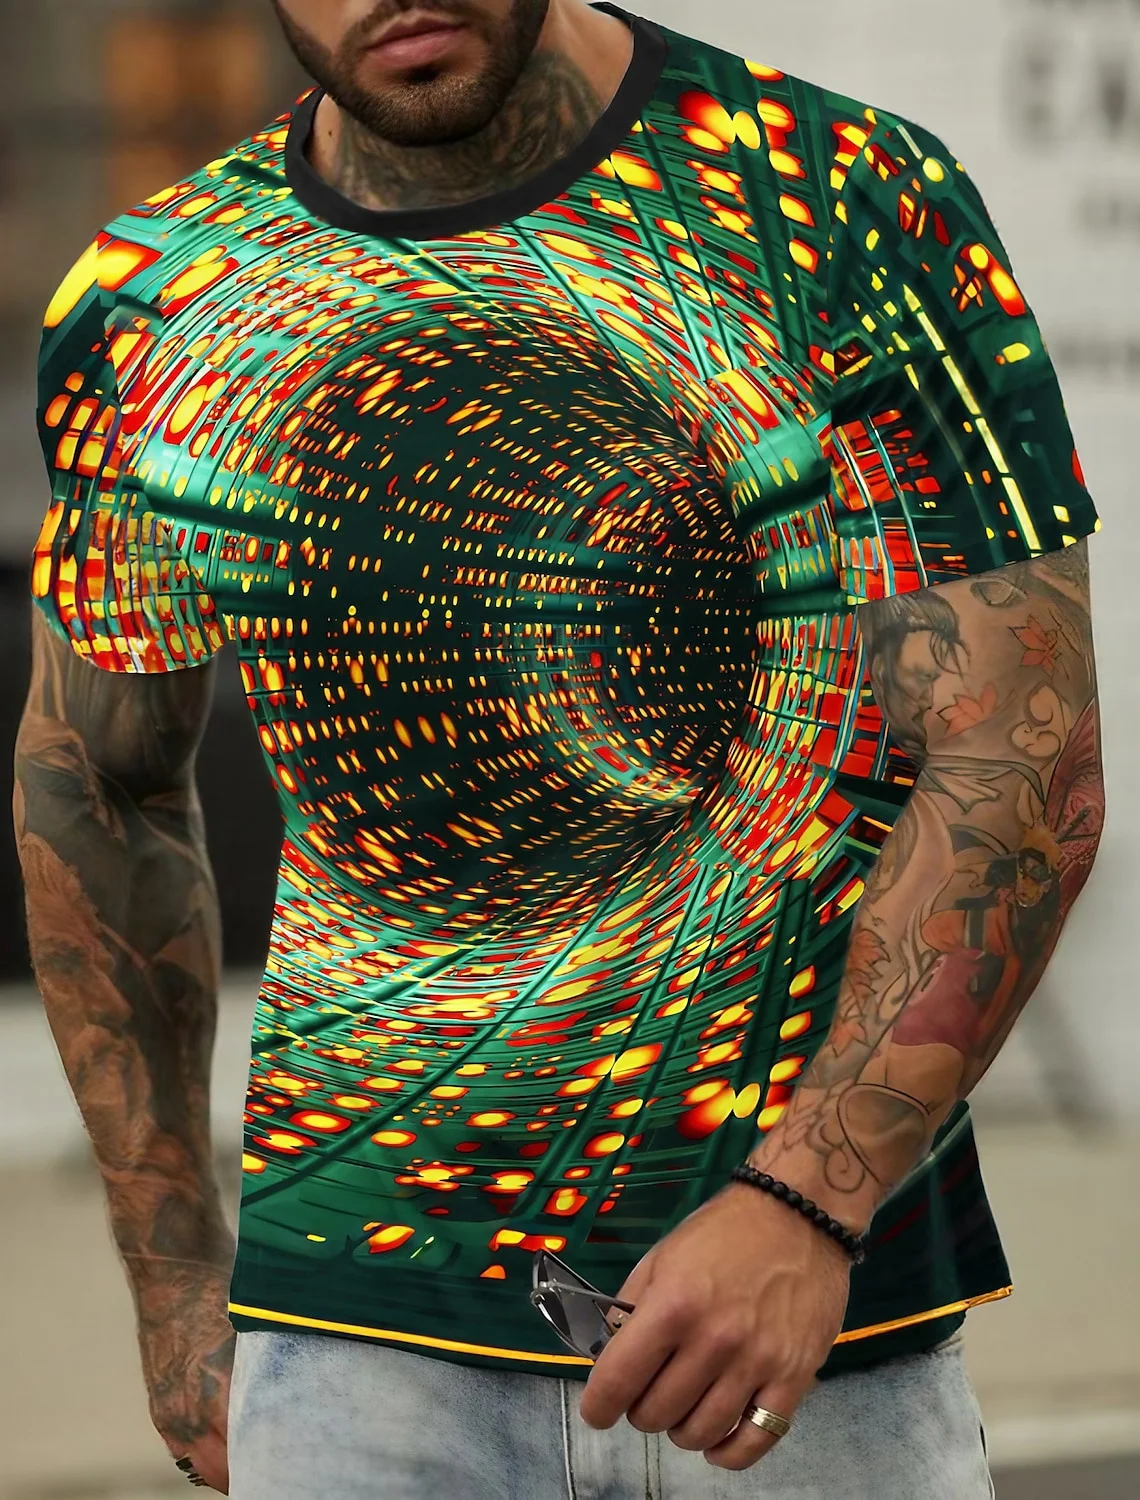 

Футболка мужская с геометрическим 3D-принтом, модная рубашка с коротким рукавом, с переходом по времени и космосу, с градиентом, уличная одежда